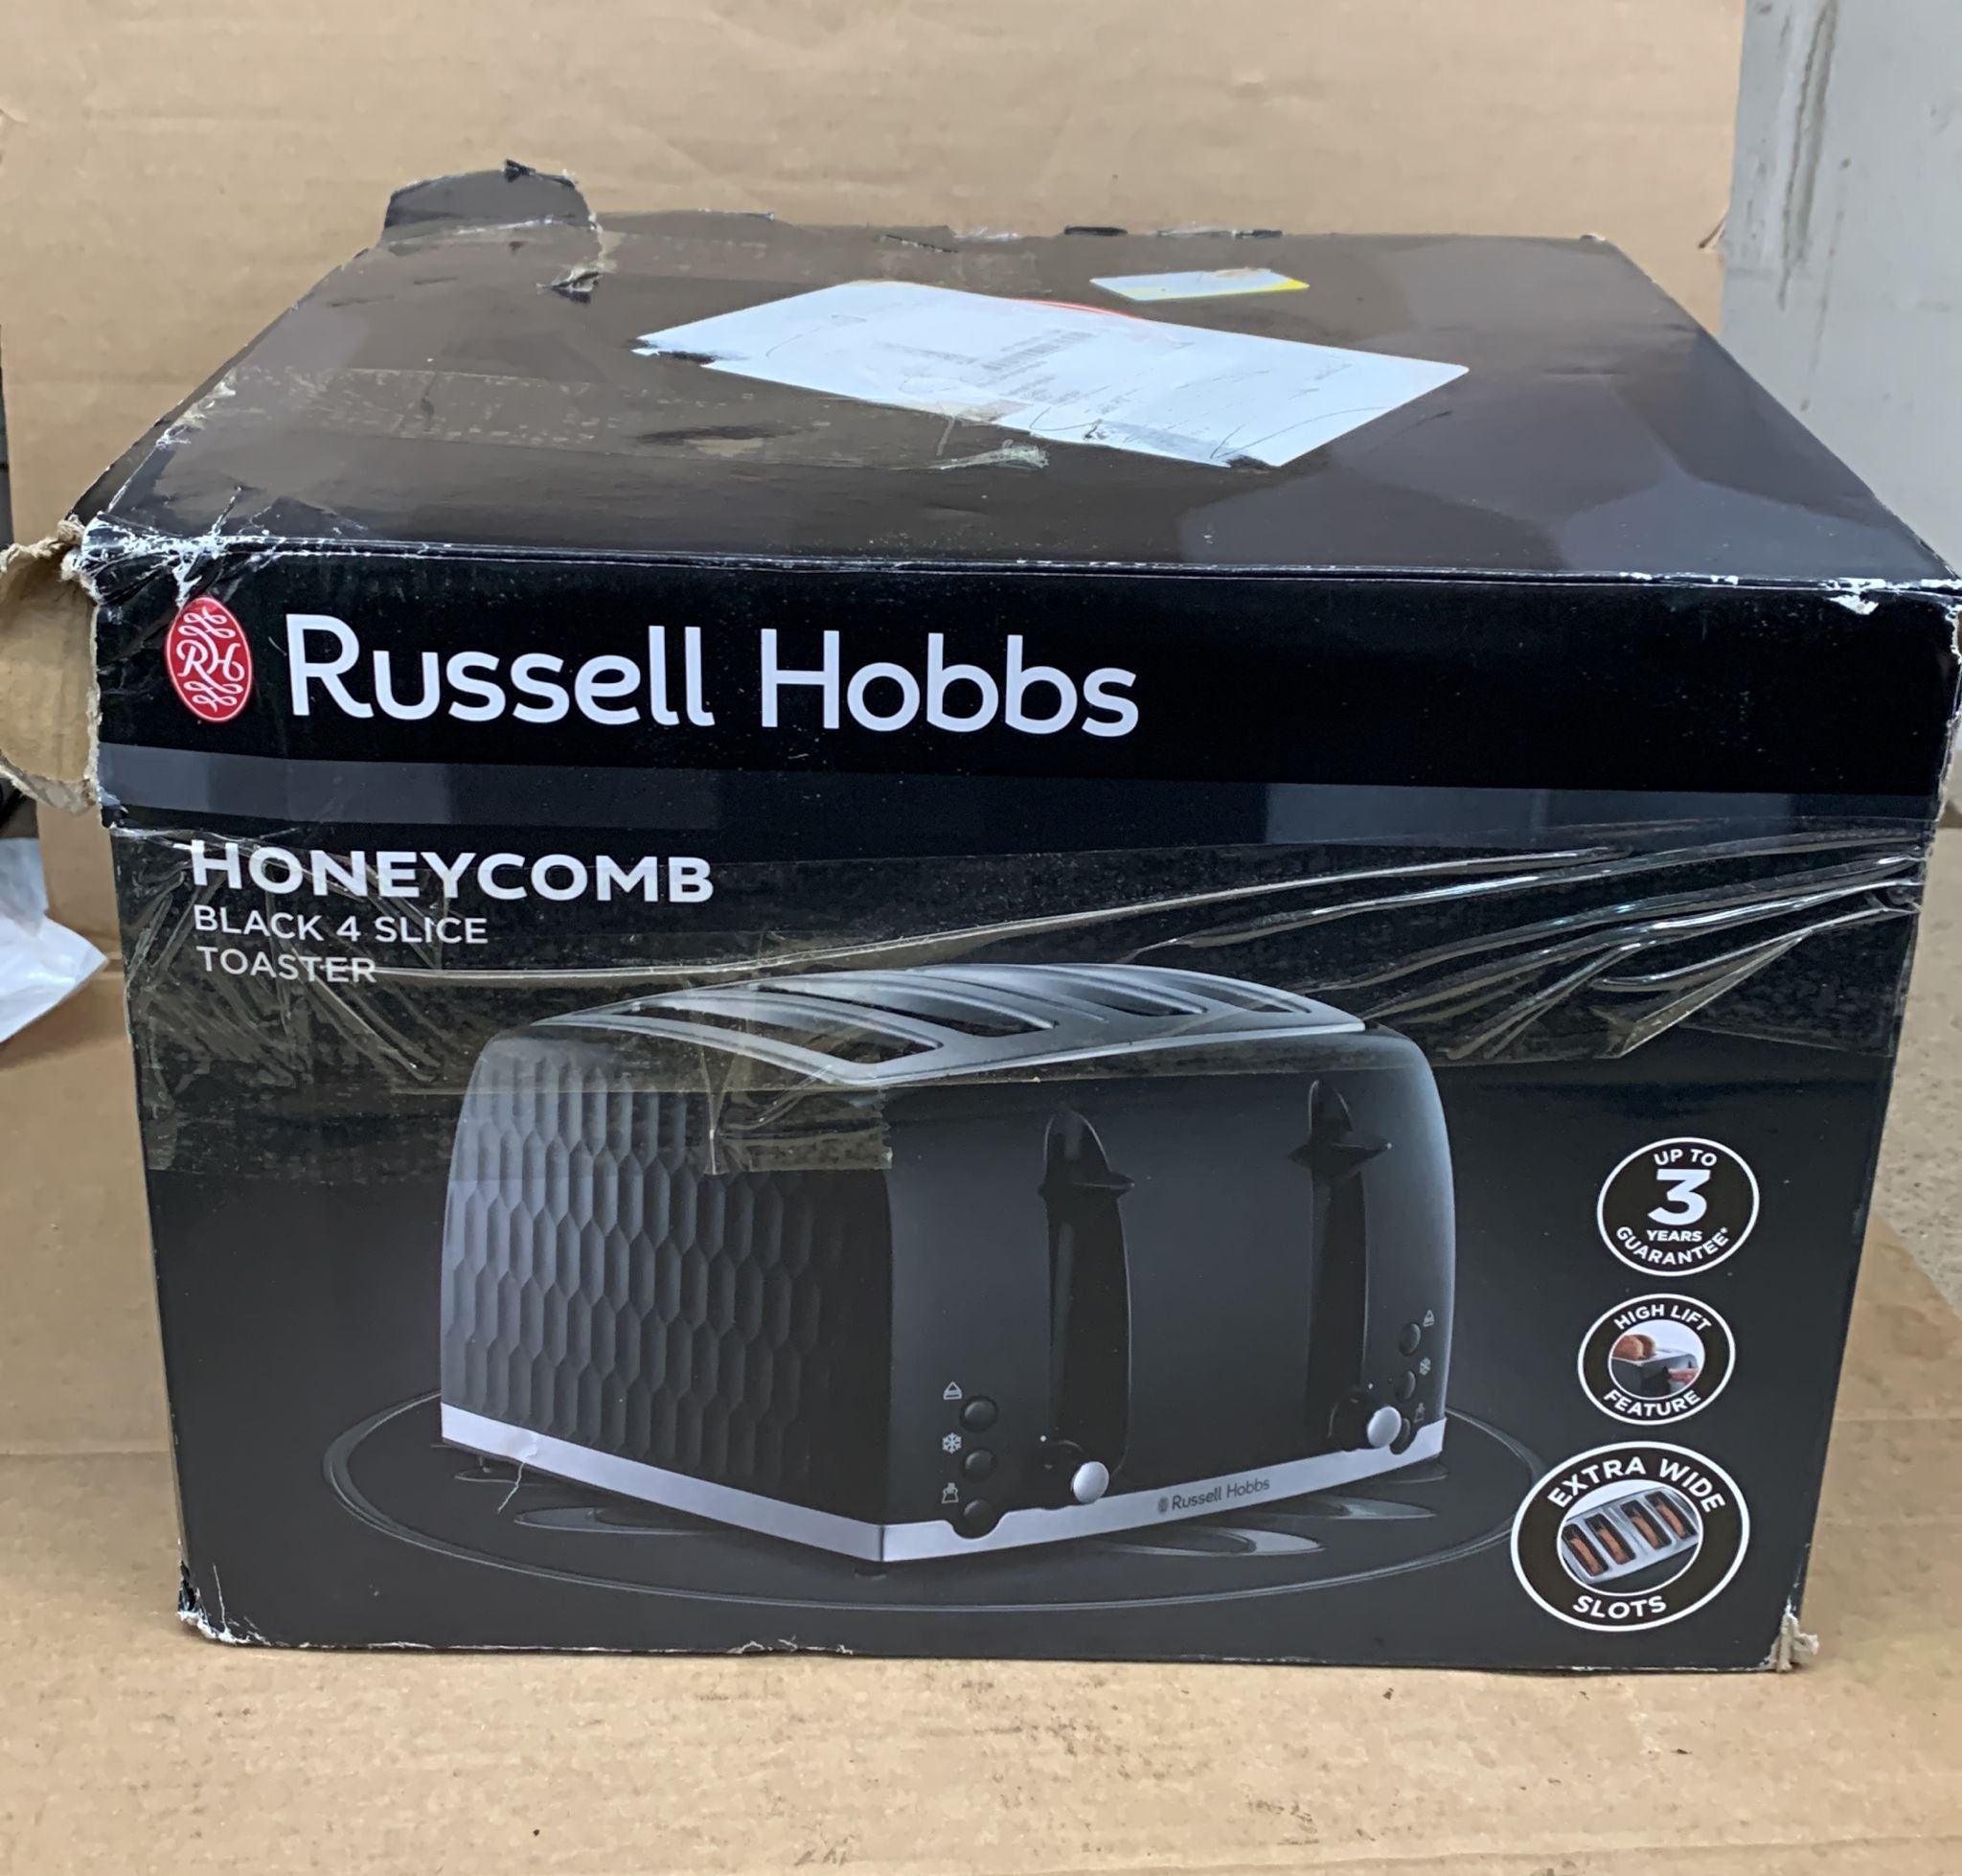 Russell Hobbs 26071 Honeycomb Black 4-Slice Toaster-5155U